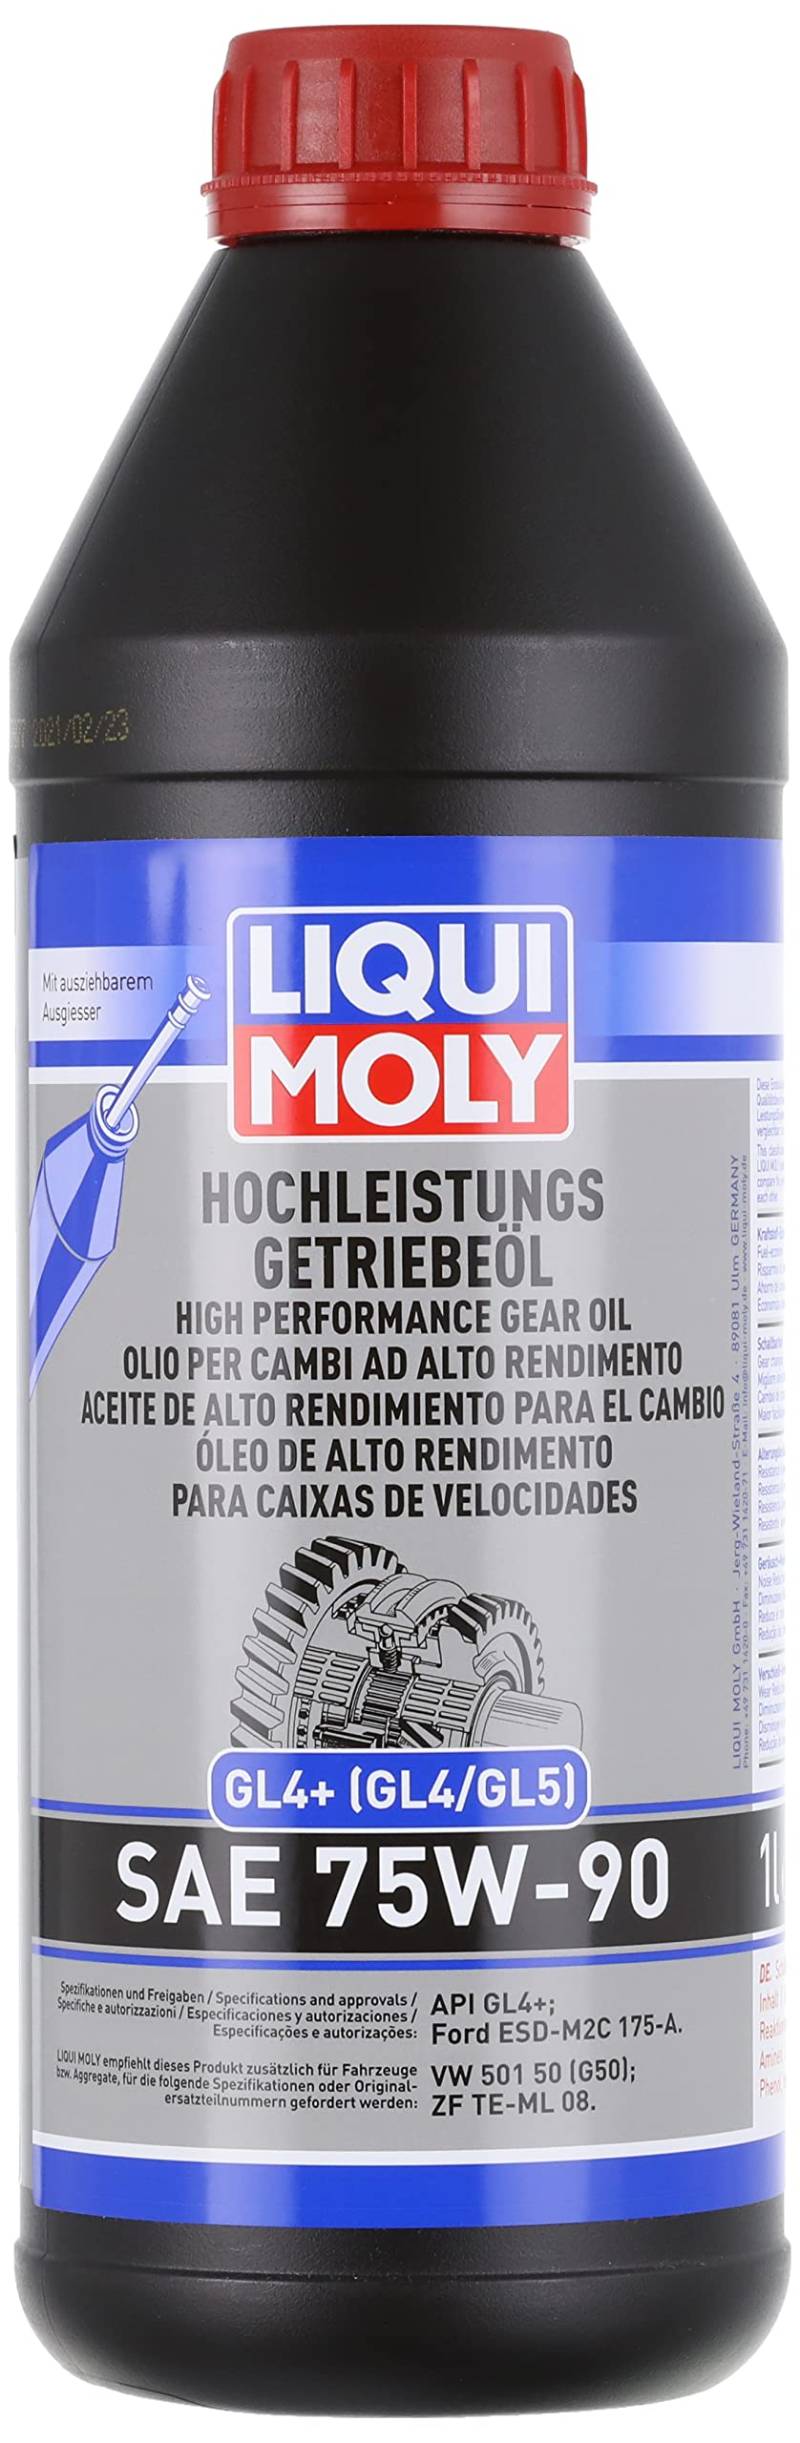 LIQUI MOLY Hochleistungs-Getriebeöl (GL4+) SAE 75W-90 | 1 L | Getriebeöl | Hydrauliköl | Art.-Nr.: 4434 von Liqui Moly